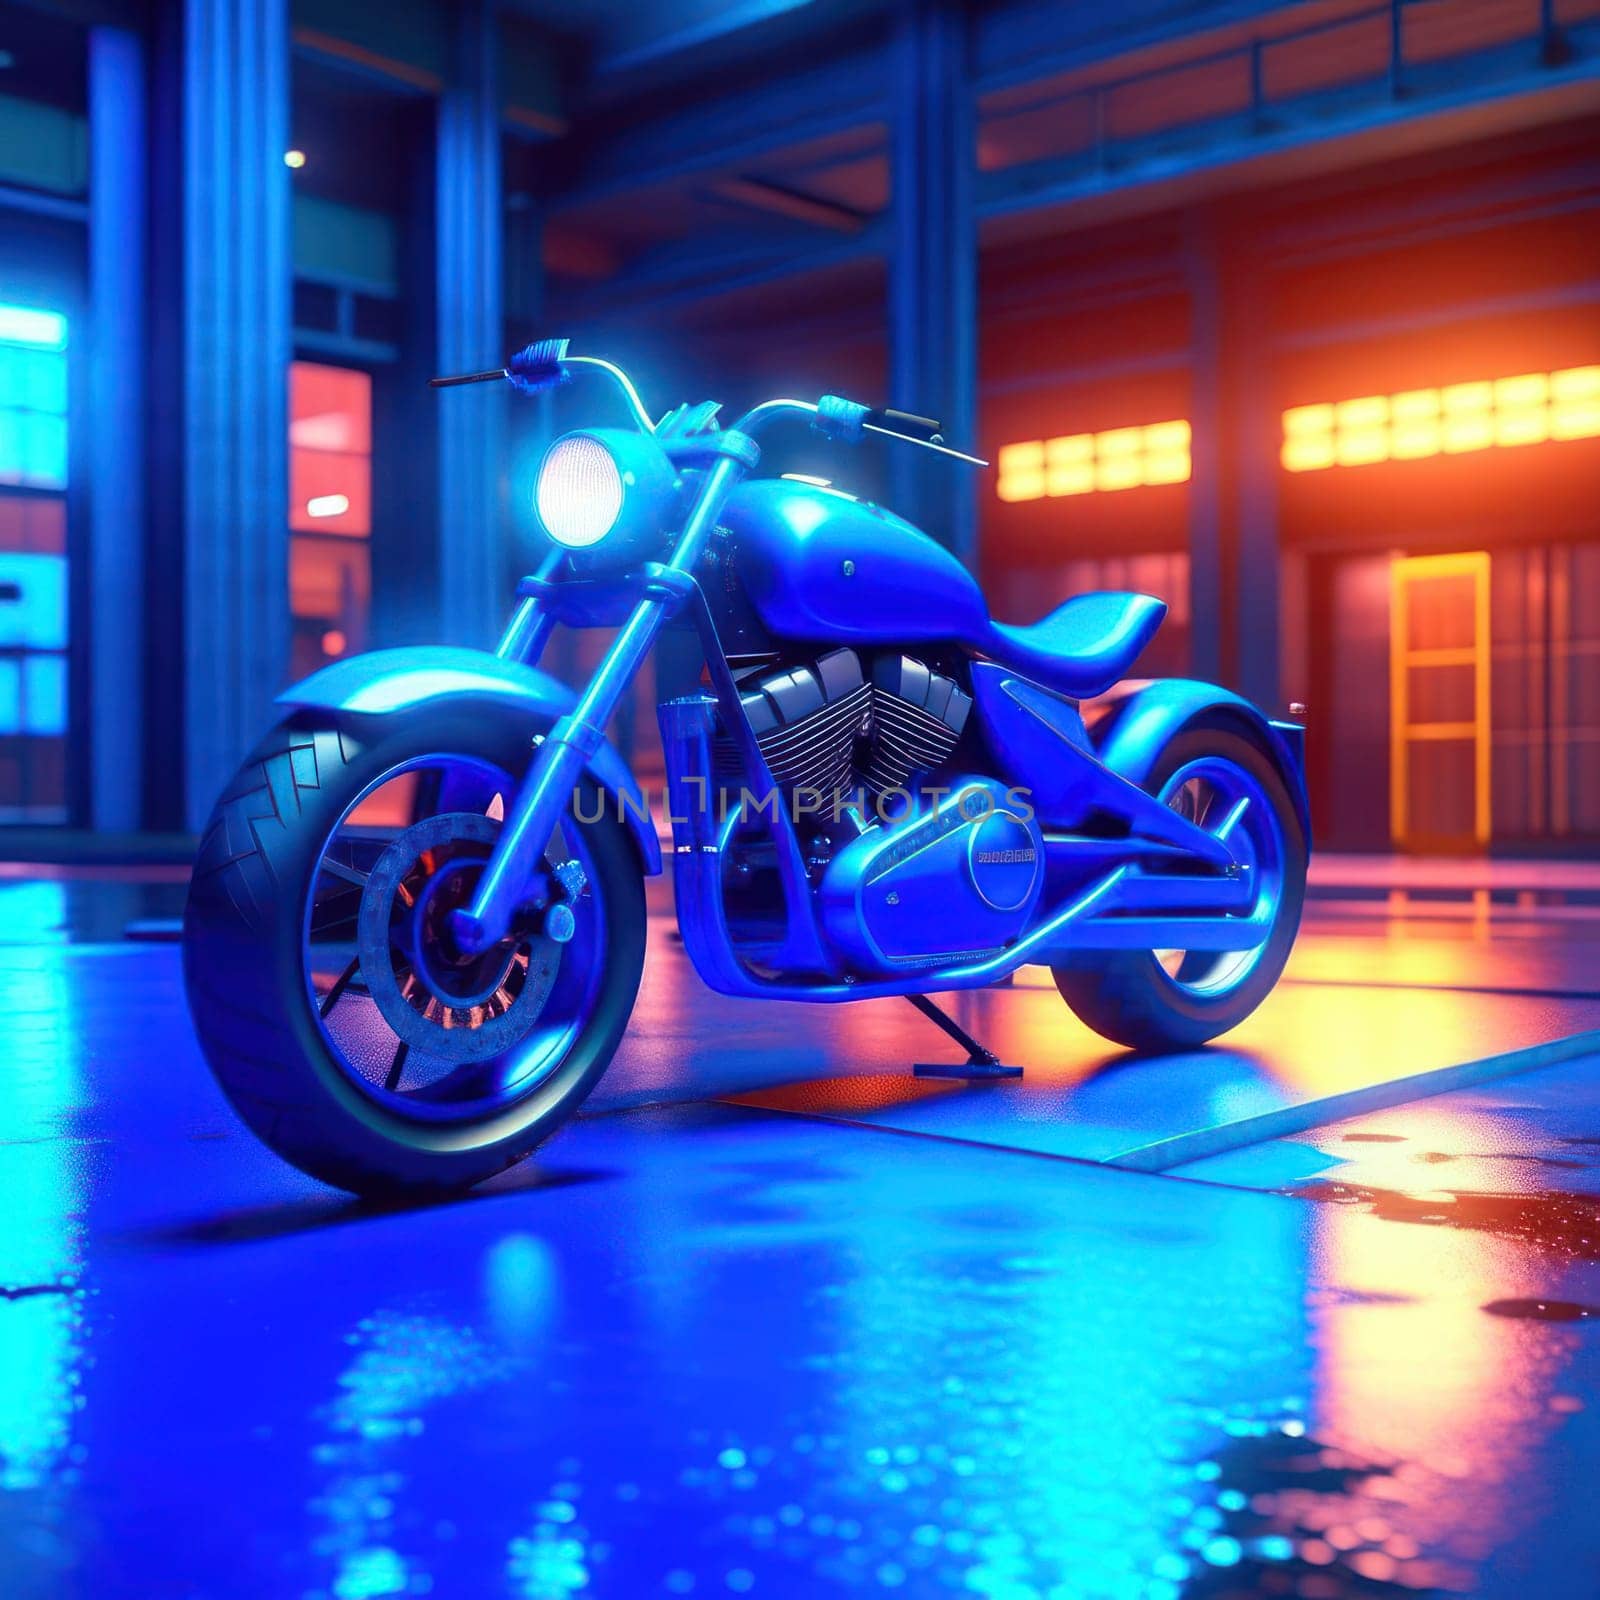 Blue Bike. Image created by AI